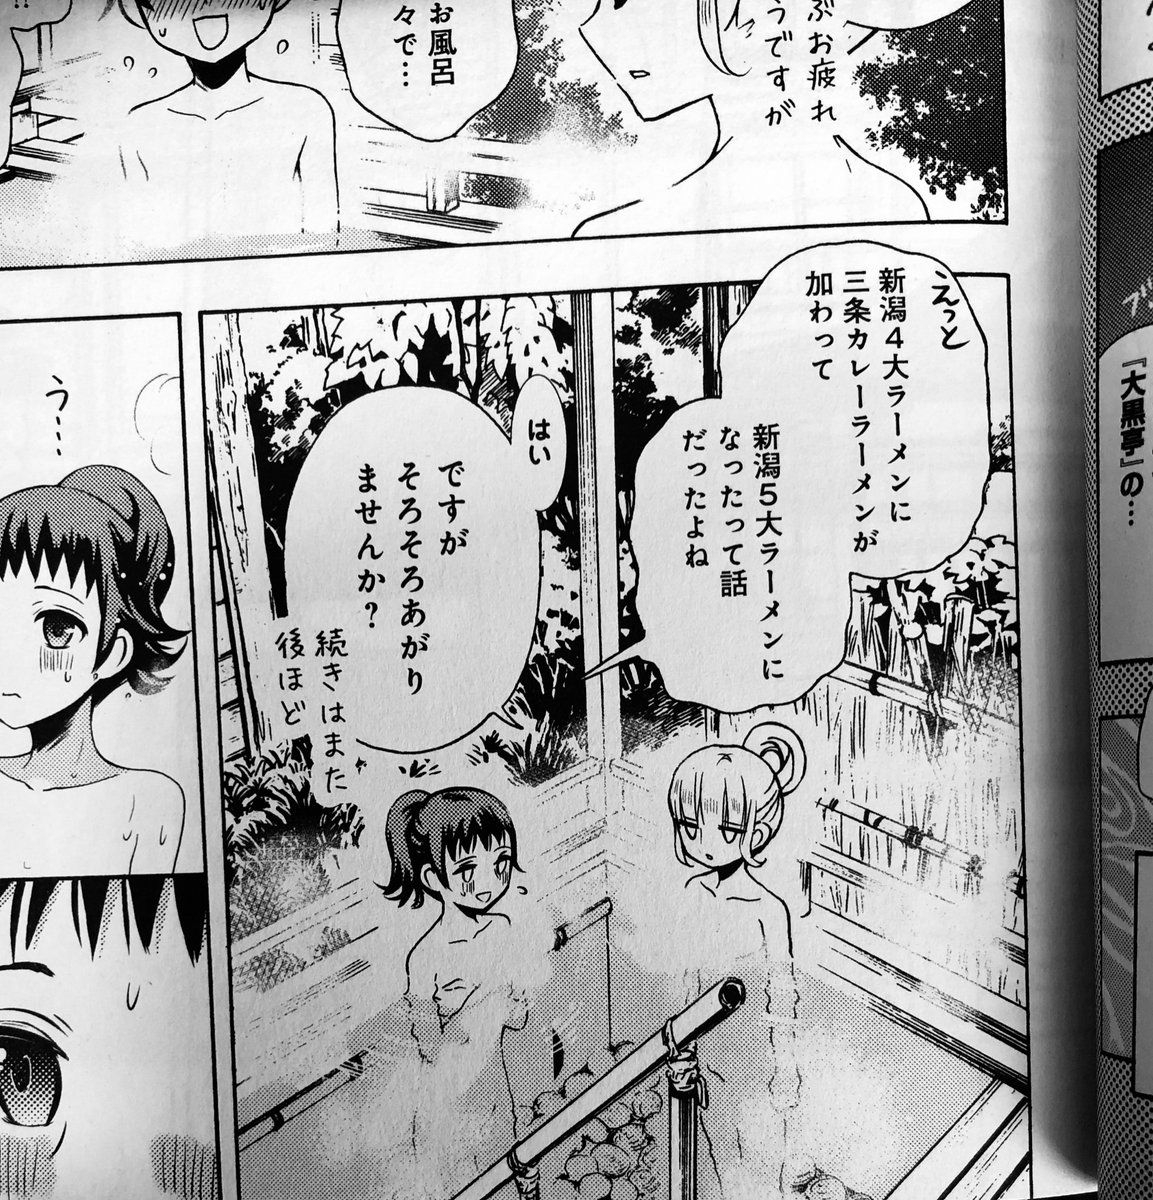 漫画本文にも出した嵐渓荘の立って入る露天風呂すごい好き。 